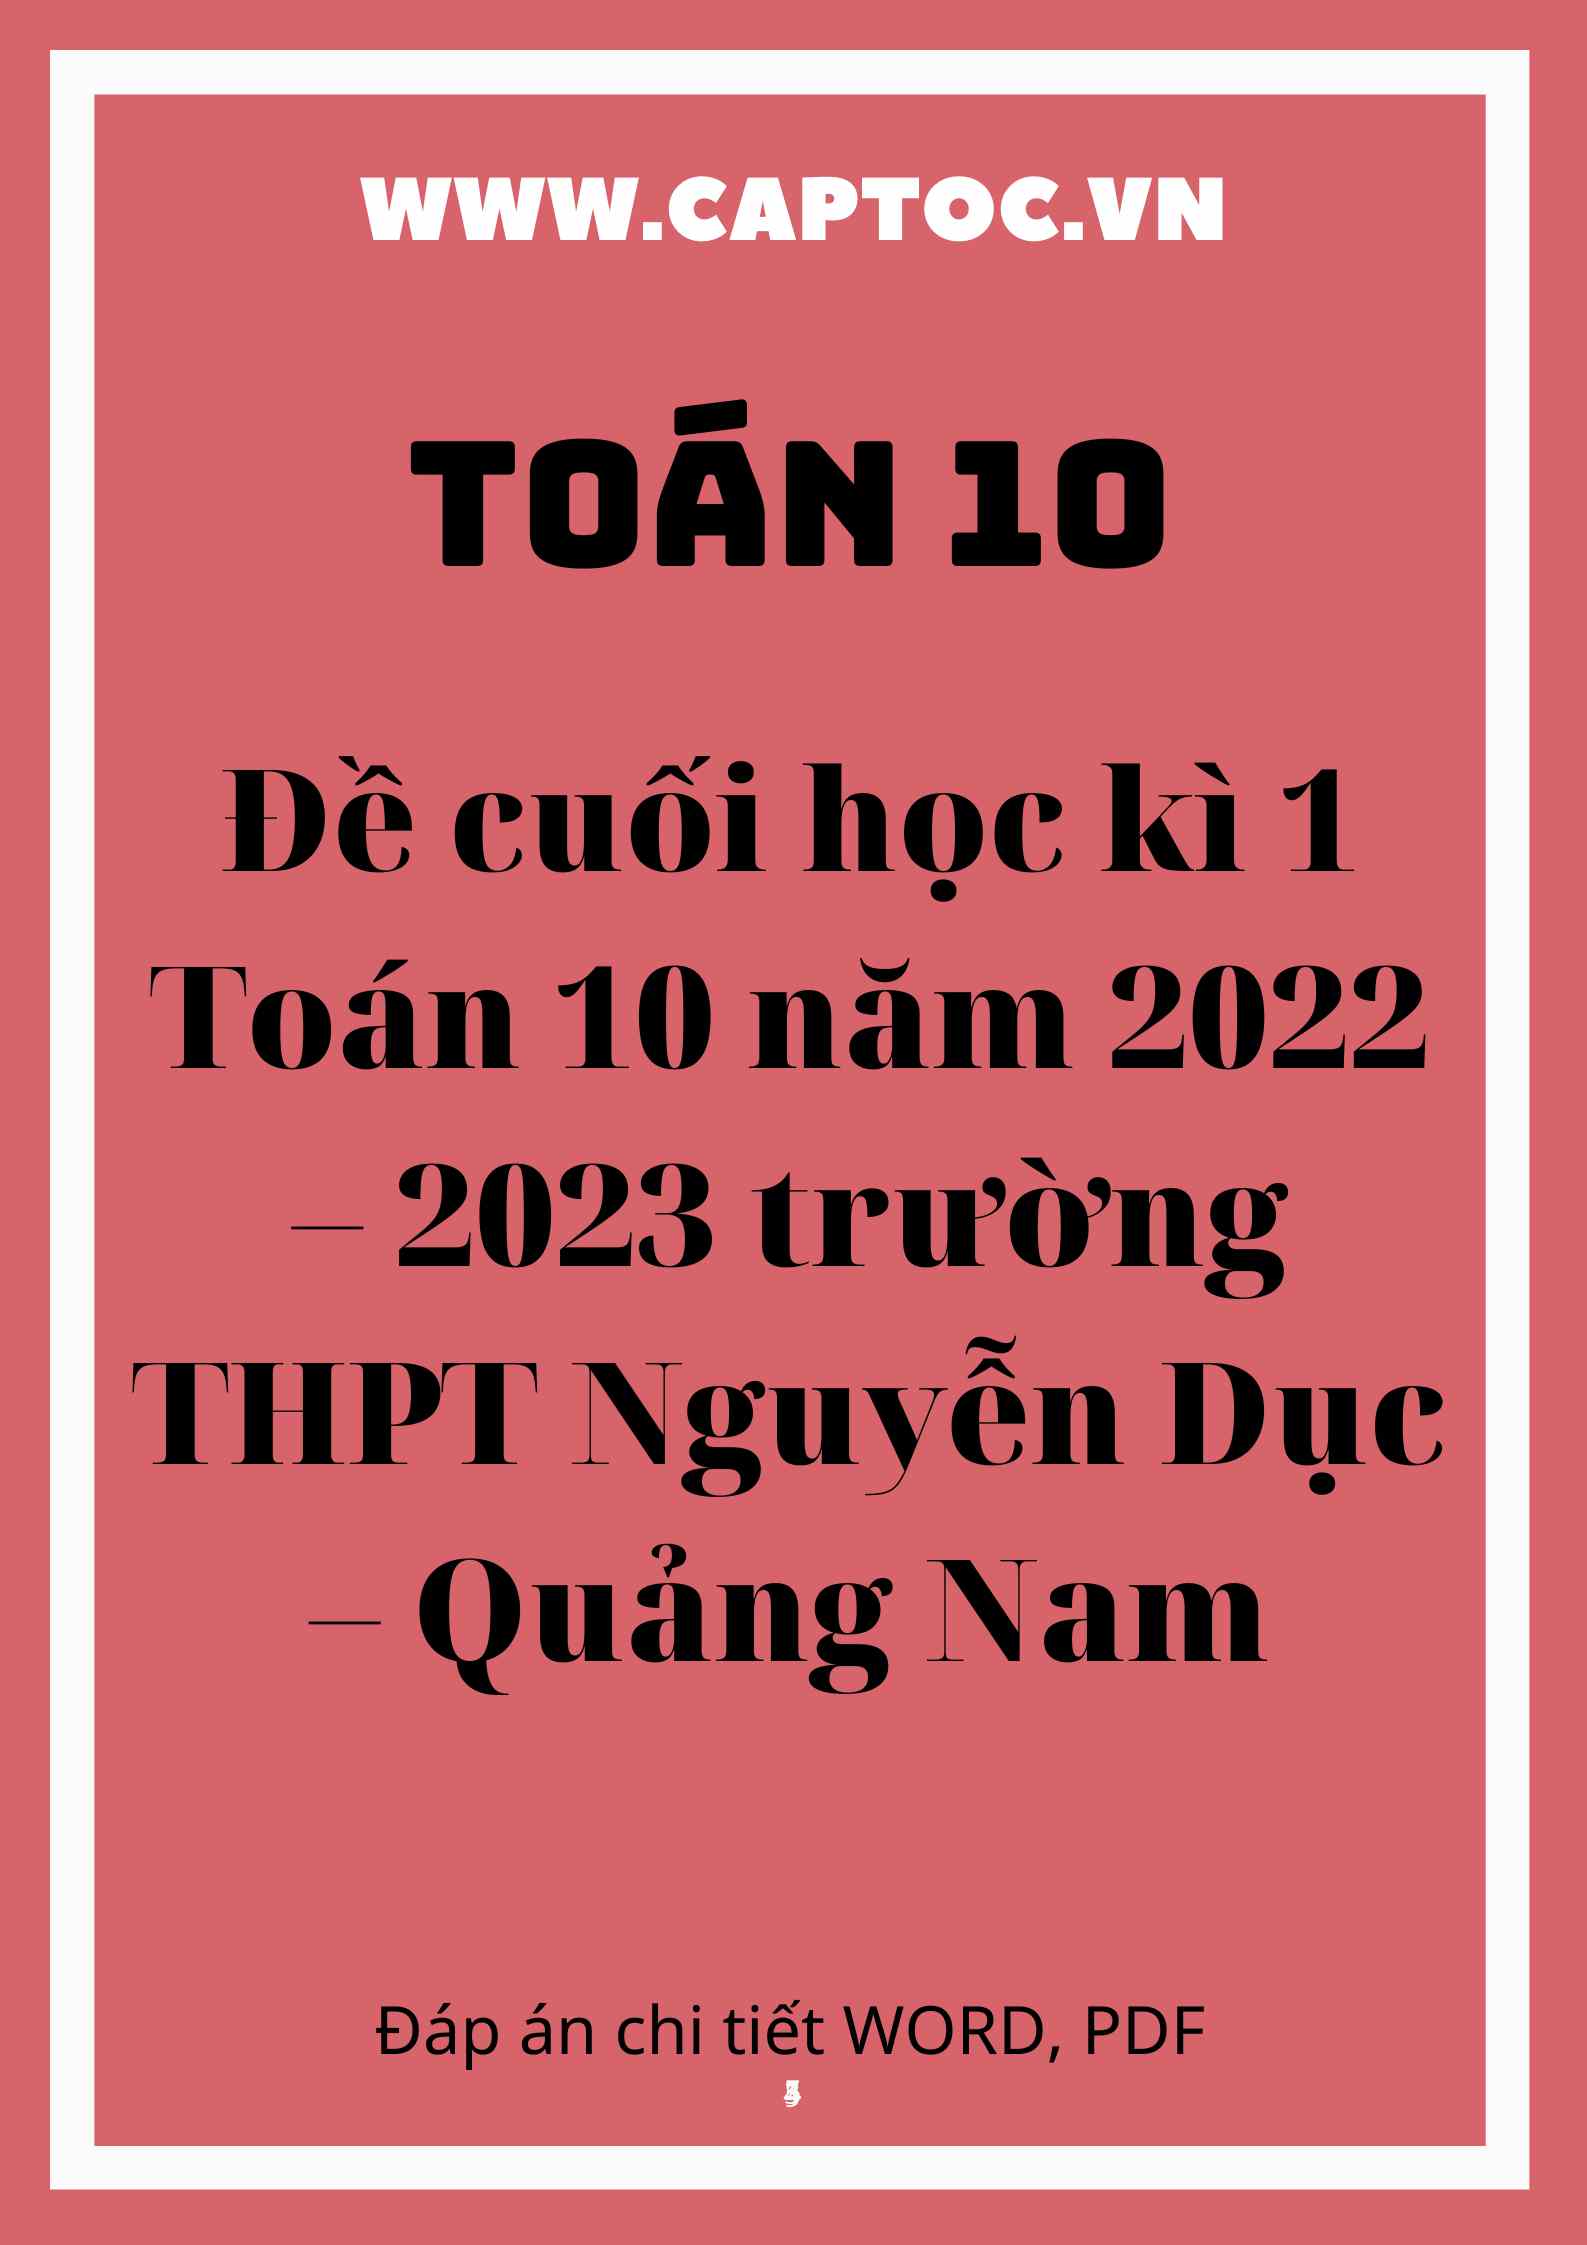 Đề cuối học kì 1 Toán 10 năm 2022 – 2023 trường THPT Nguyễn Dục – Quảng Nam